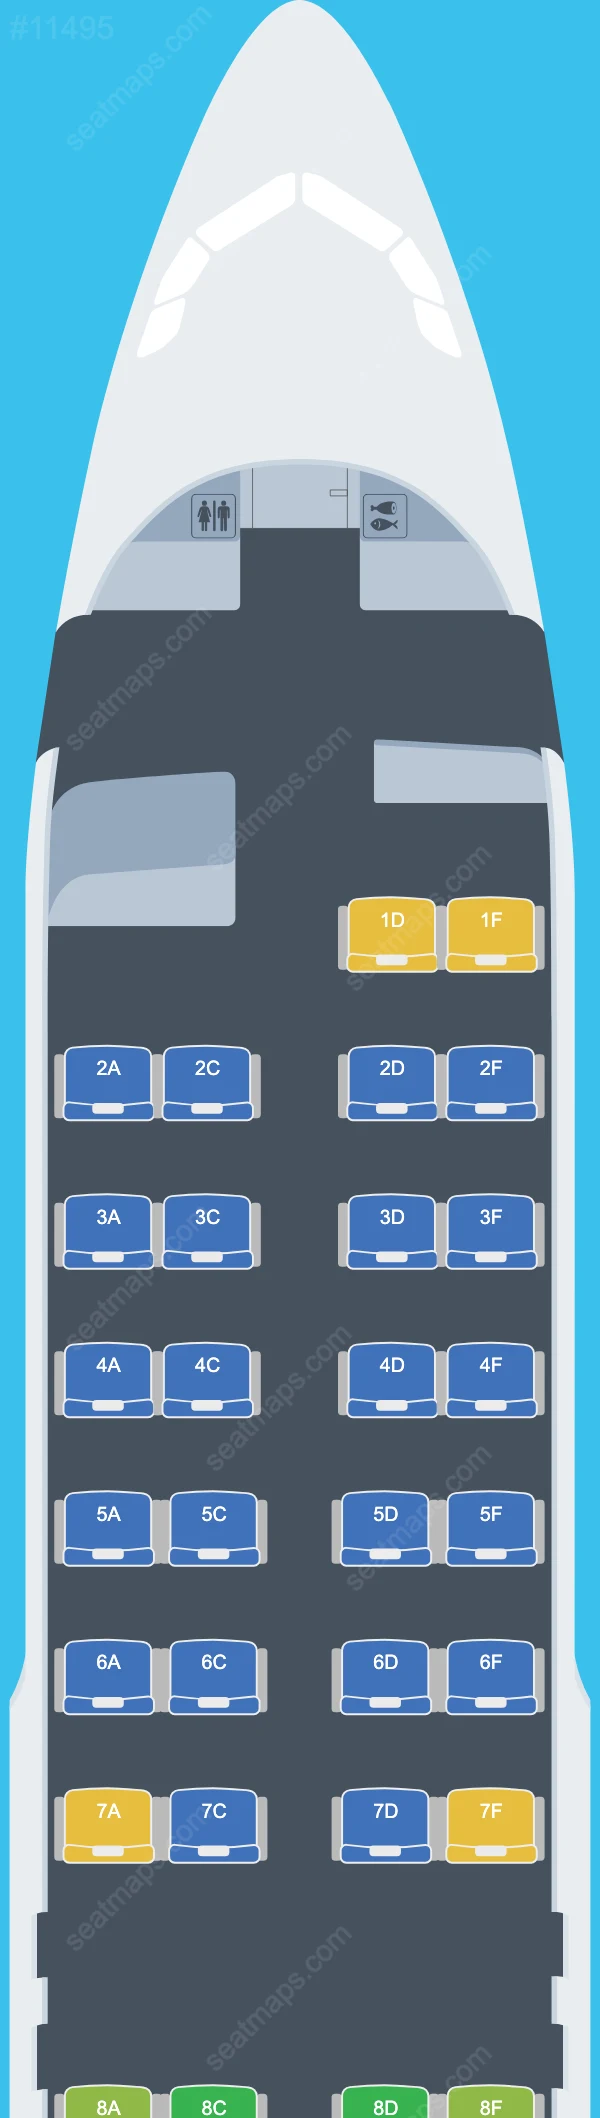 Air Canada Airbus A320 Seat Maps A320-200 V.3